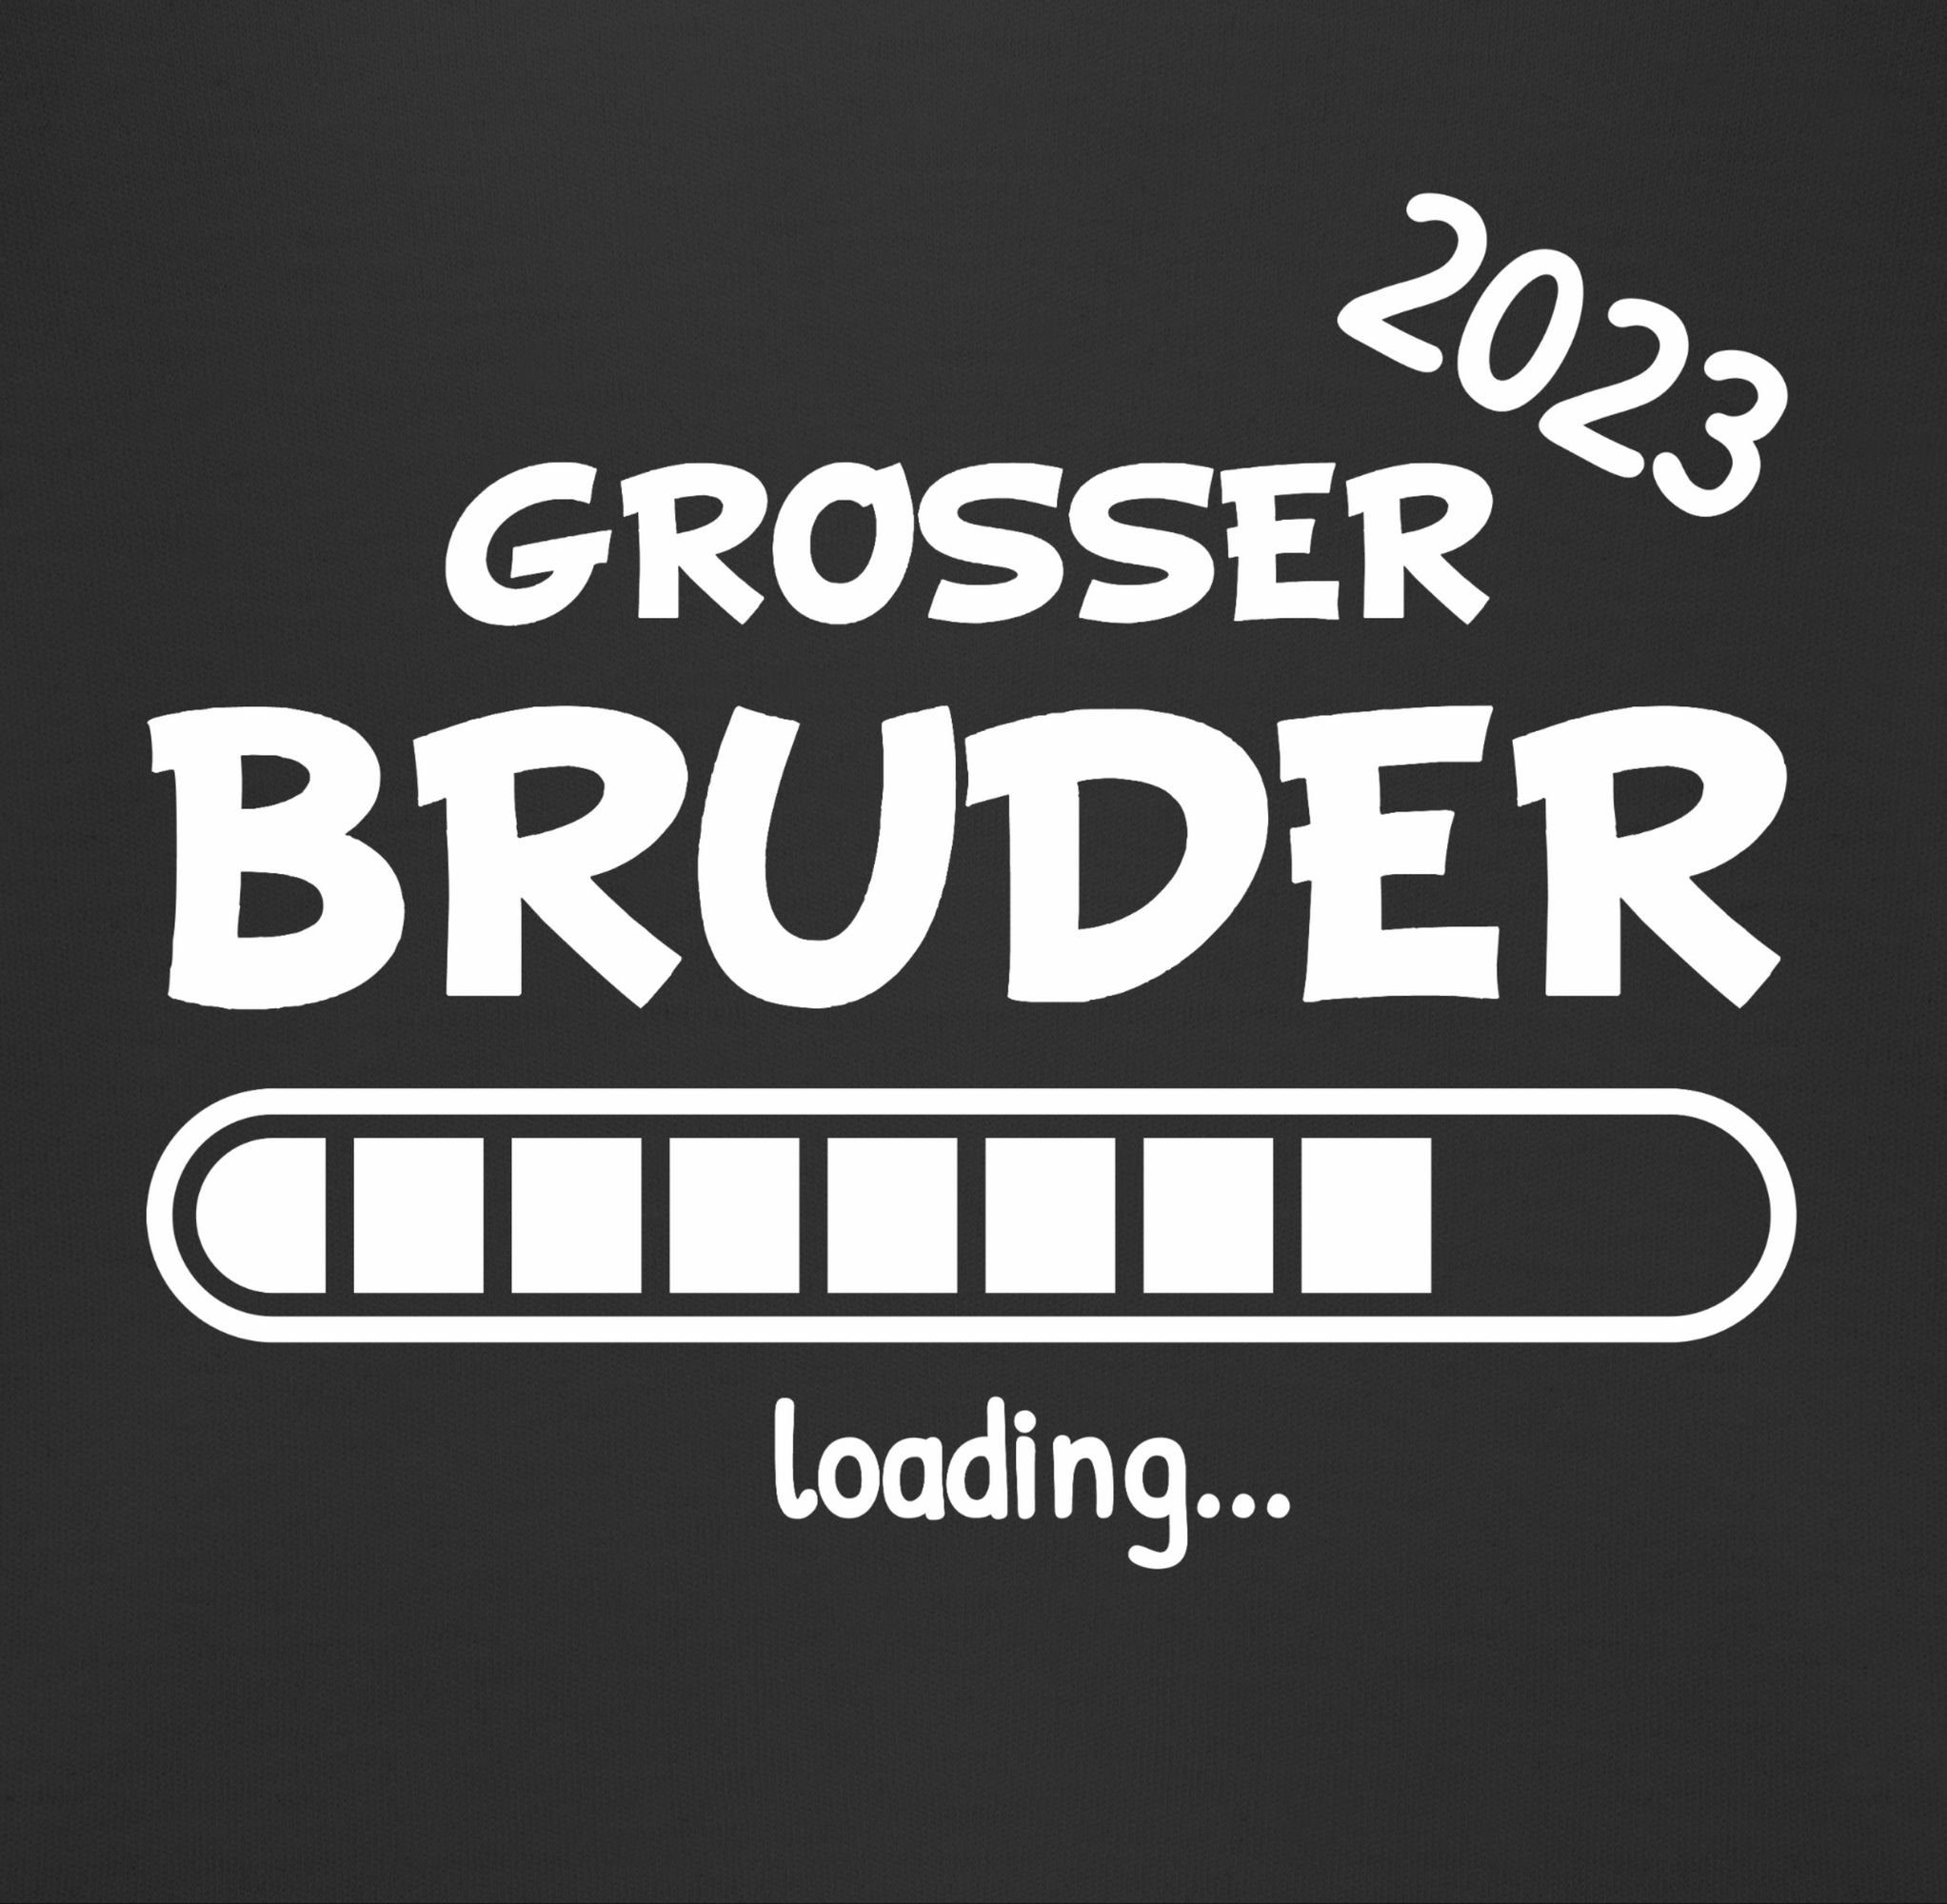 Bruder Shirtracer 2023 2 Bruder Sweatshirt Großer Schwarz loading Großer